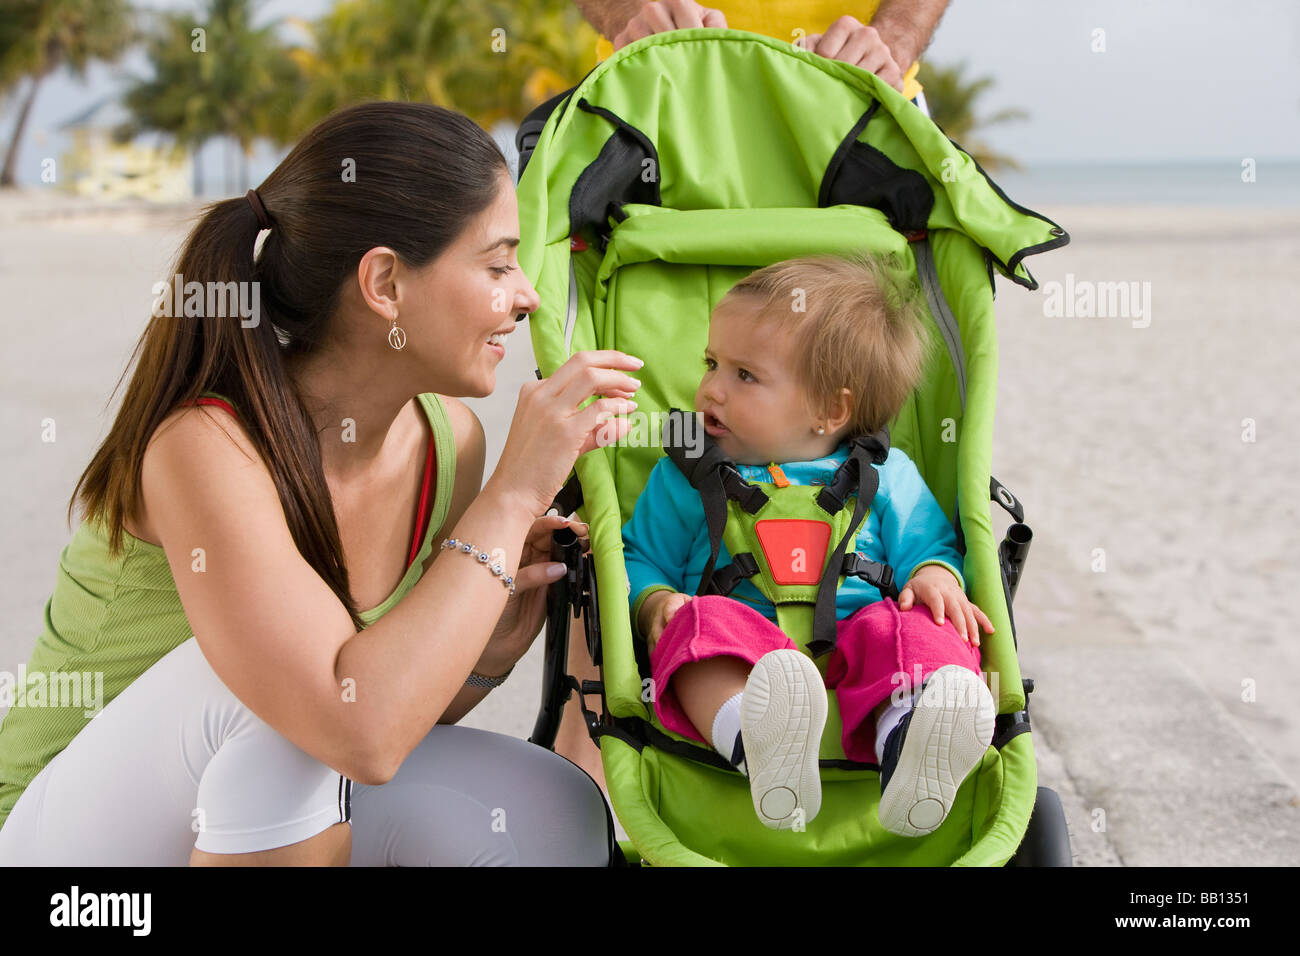 girl jogging stroller